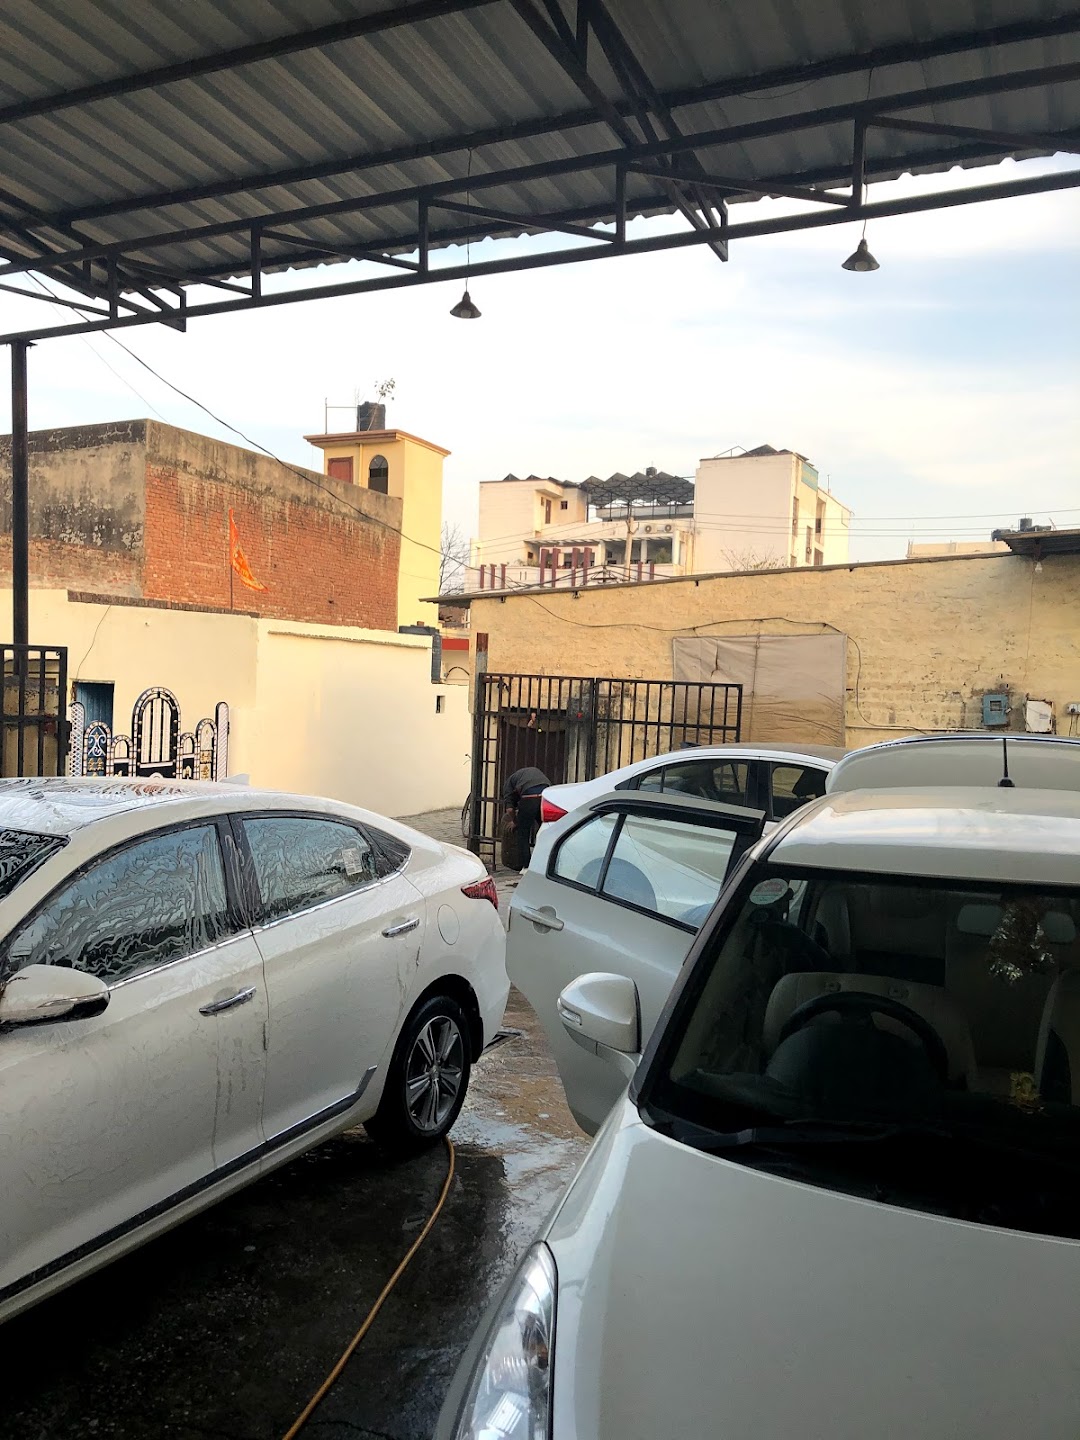 Vaashistha Car Wash Centre